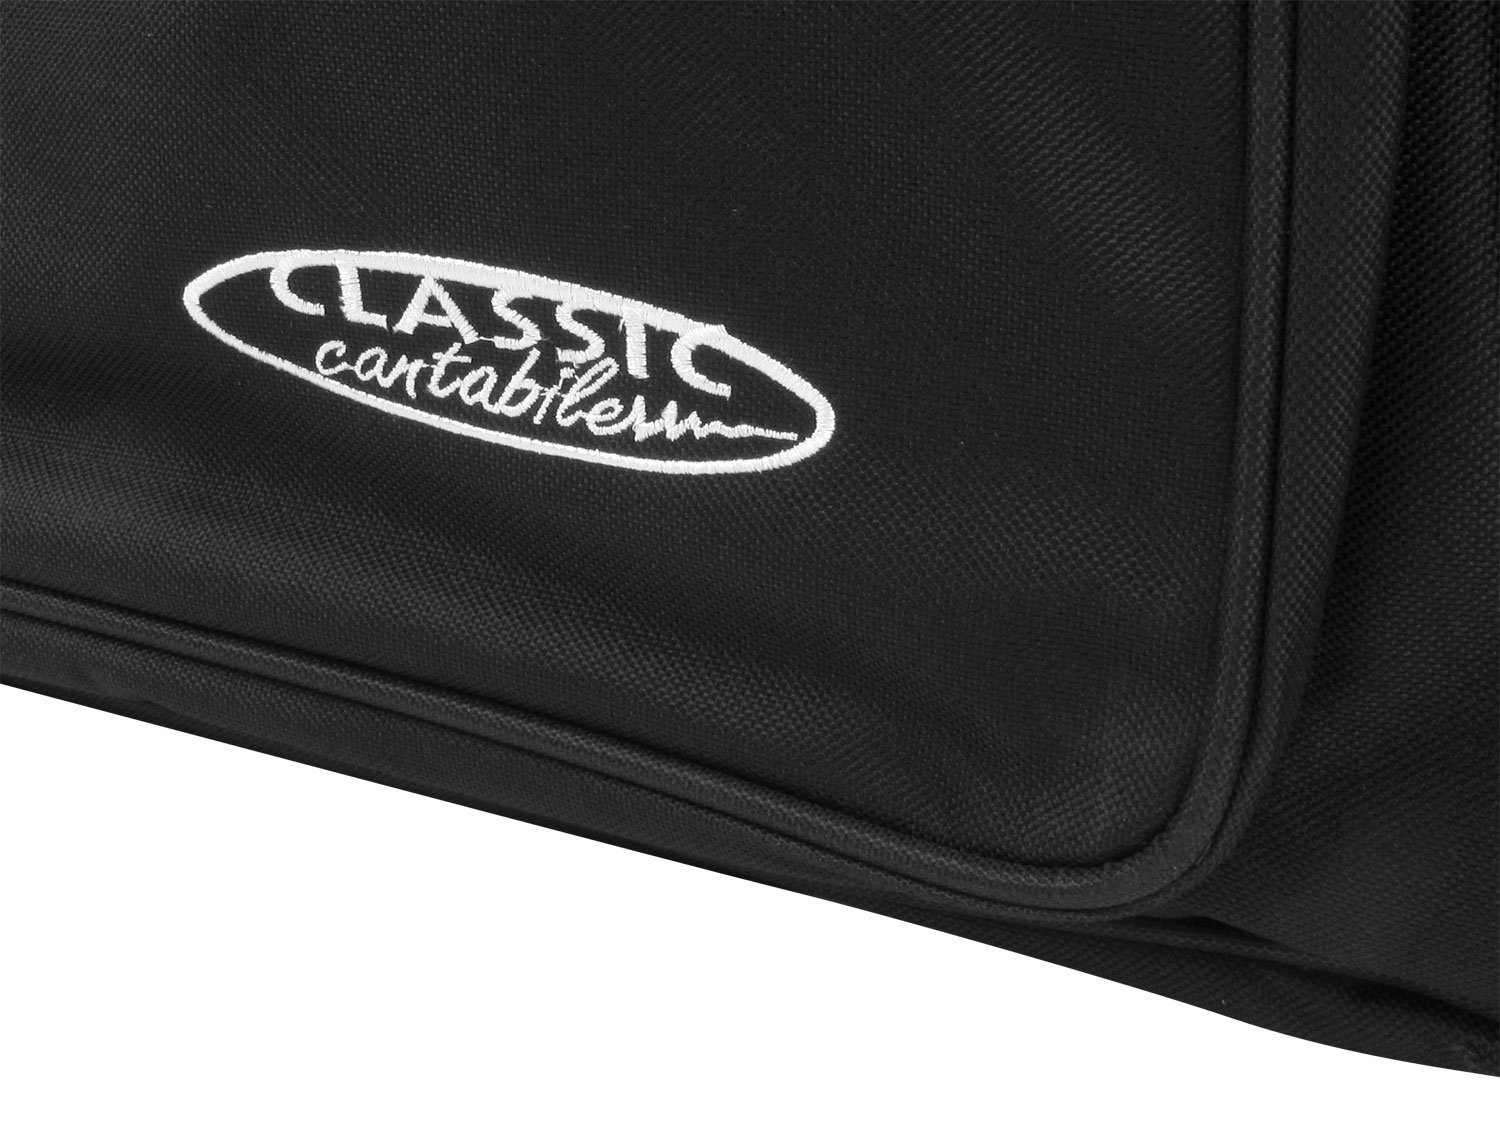 Classic Cantabile Piano-Transporttasche Rucksackgurte 15 mit Innenmaße x - cm, Schaumstoffpolsterung, Keyboardtasche wasserfest KT-D 140 reiß- x und 38